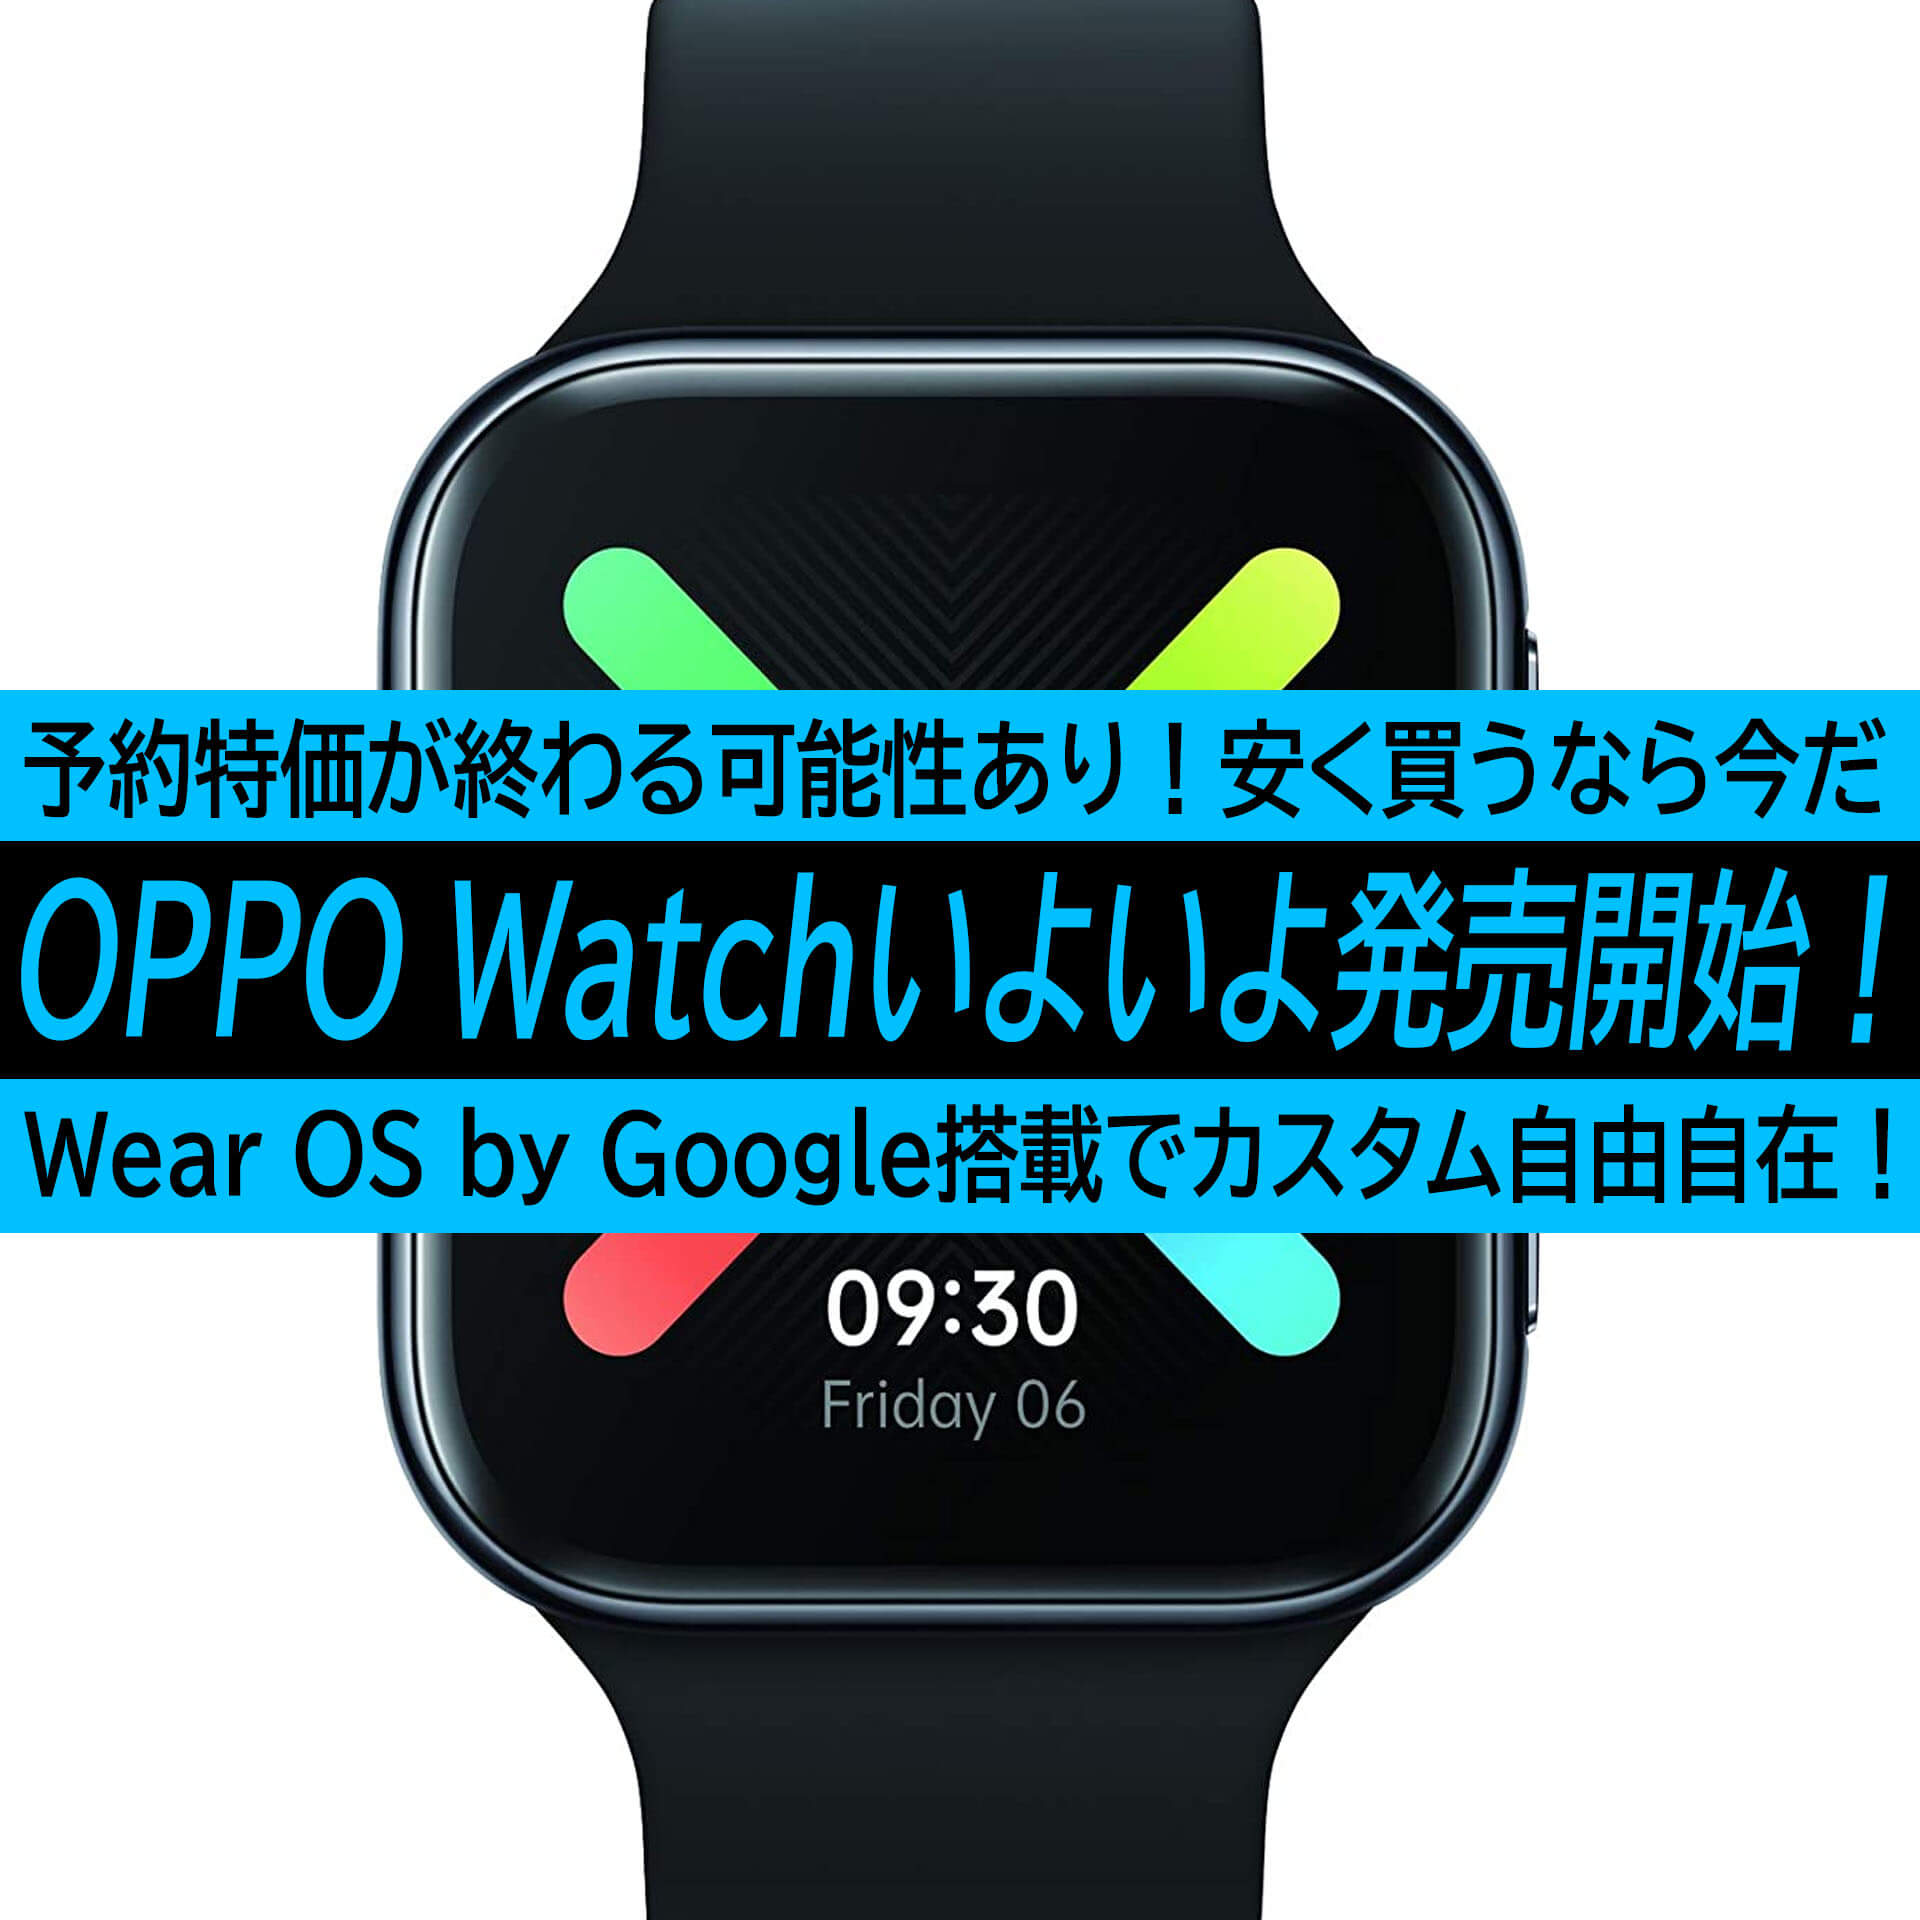 9月4日、ついにOPPO Watchが発売開始！デュアルチップシステムやAI 